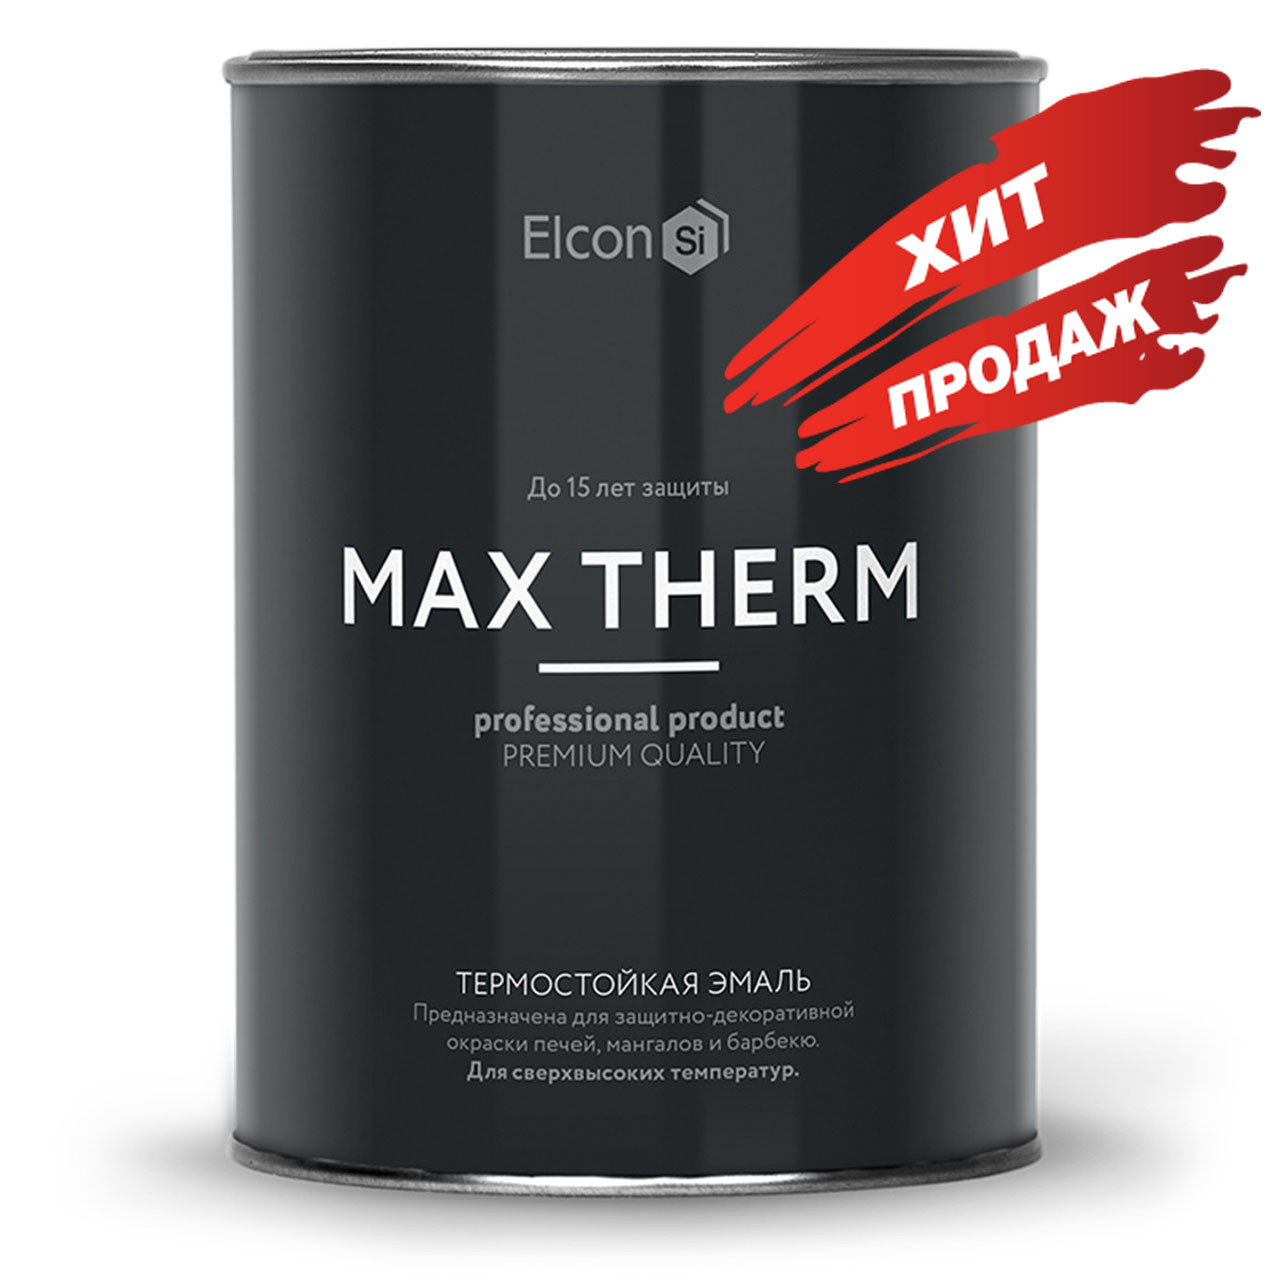 Термостойкая эмаль Elcon Max Therm  (термостойкость до 700°С)